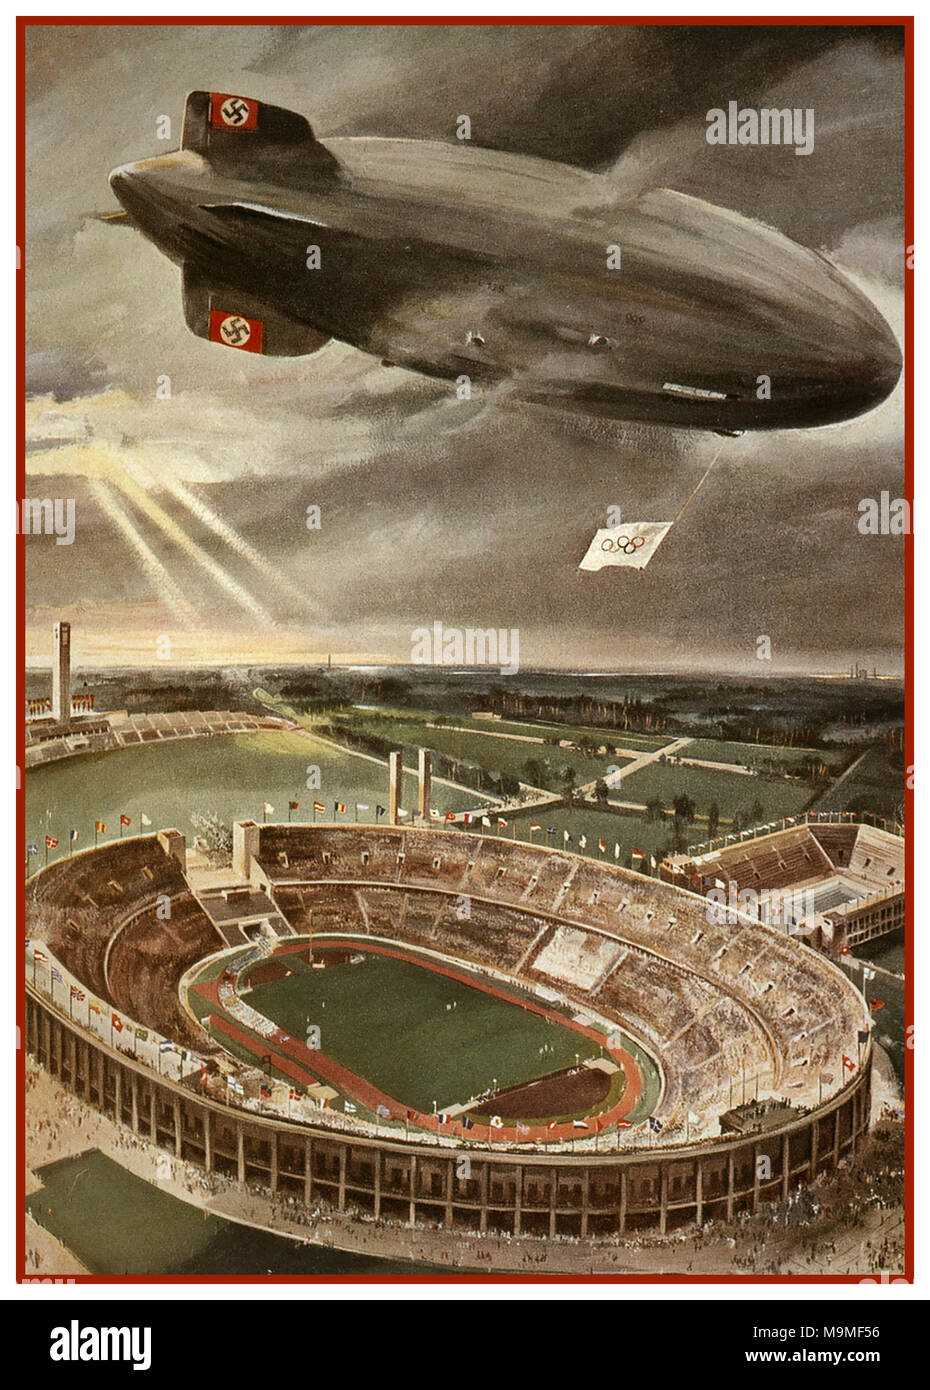 Hindenburg Zeppelin Airship 1936 Jeux Olympiques Berlin nazie Allemagne affiche ancienne illustration de l'aéronef nazi Hindenburg Zeppelin battant pavillon olympique avec des ailerons de queue de Swastika au-dessus du stade des Jeux Olympiques de Berlin lors de la cérémonie d'ouverture des Jeux Olympiques de l'Allemagne nazie. Banque D'Images